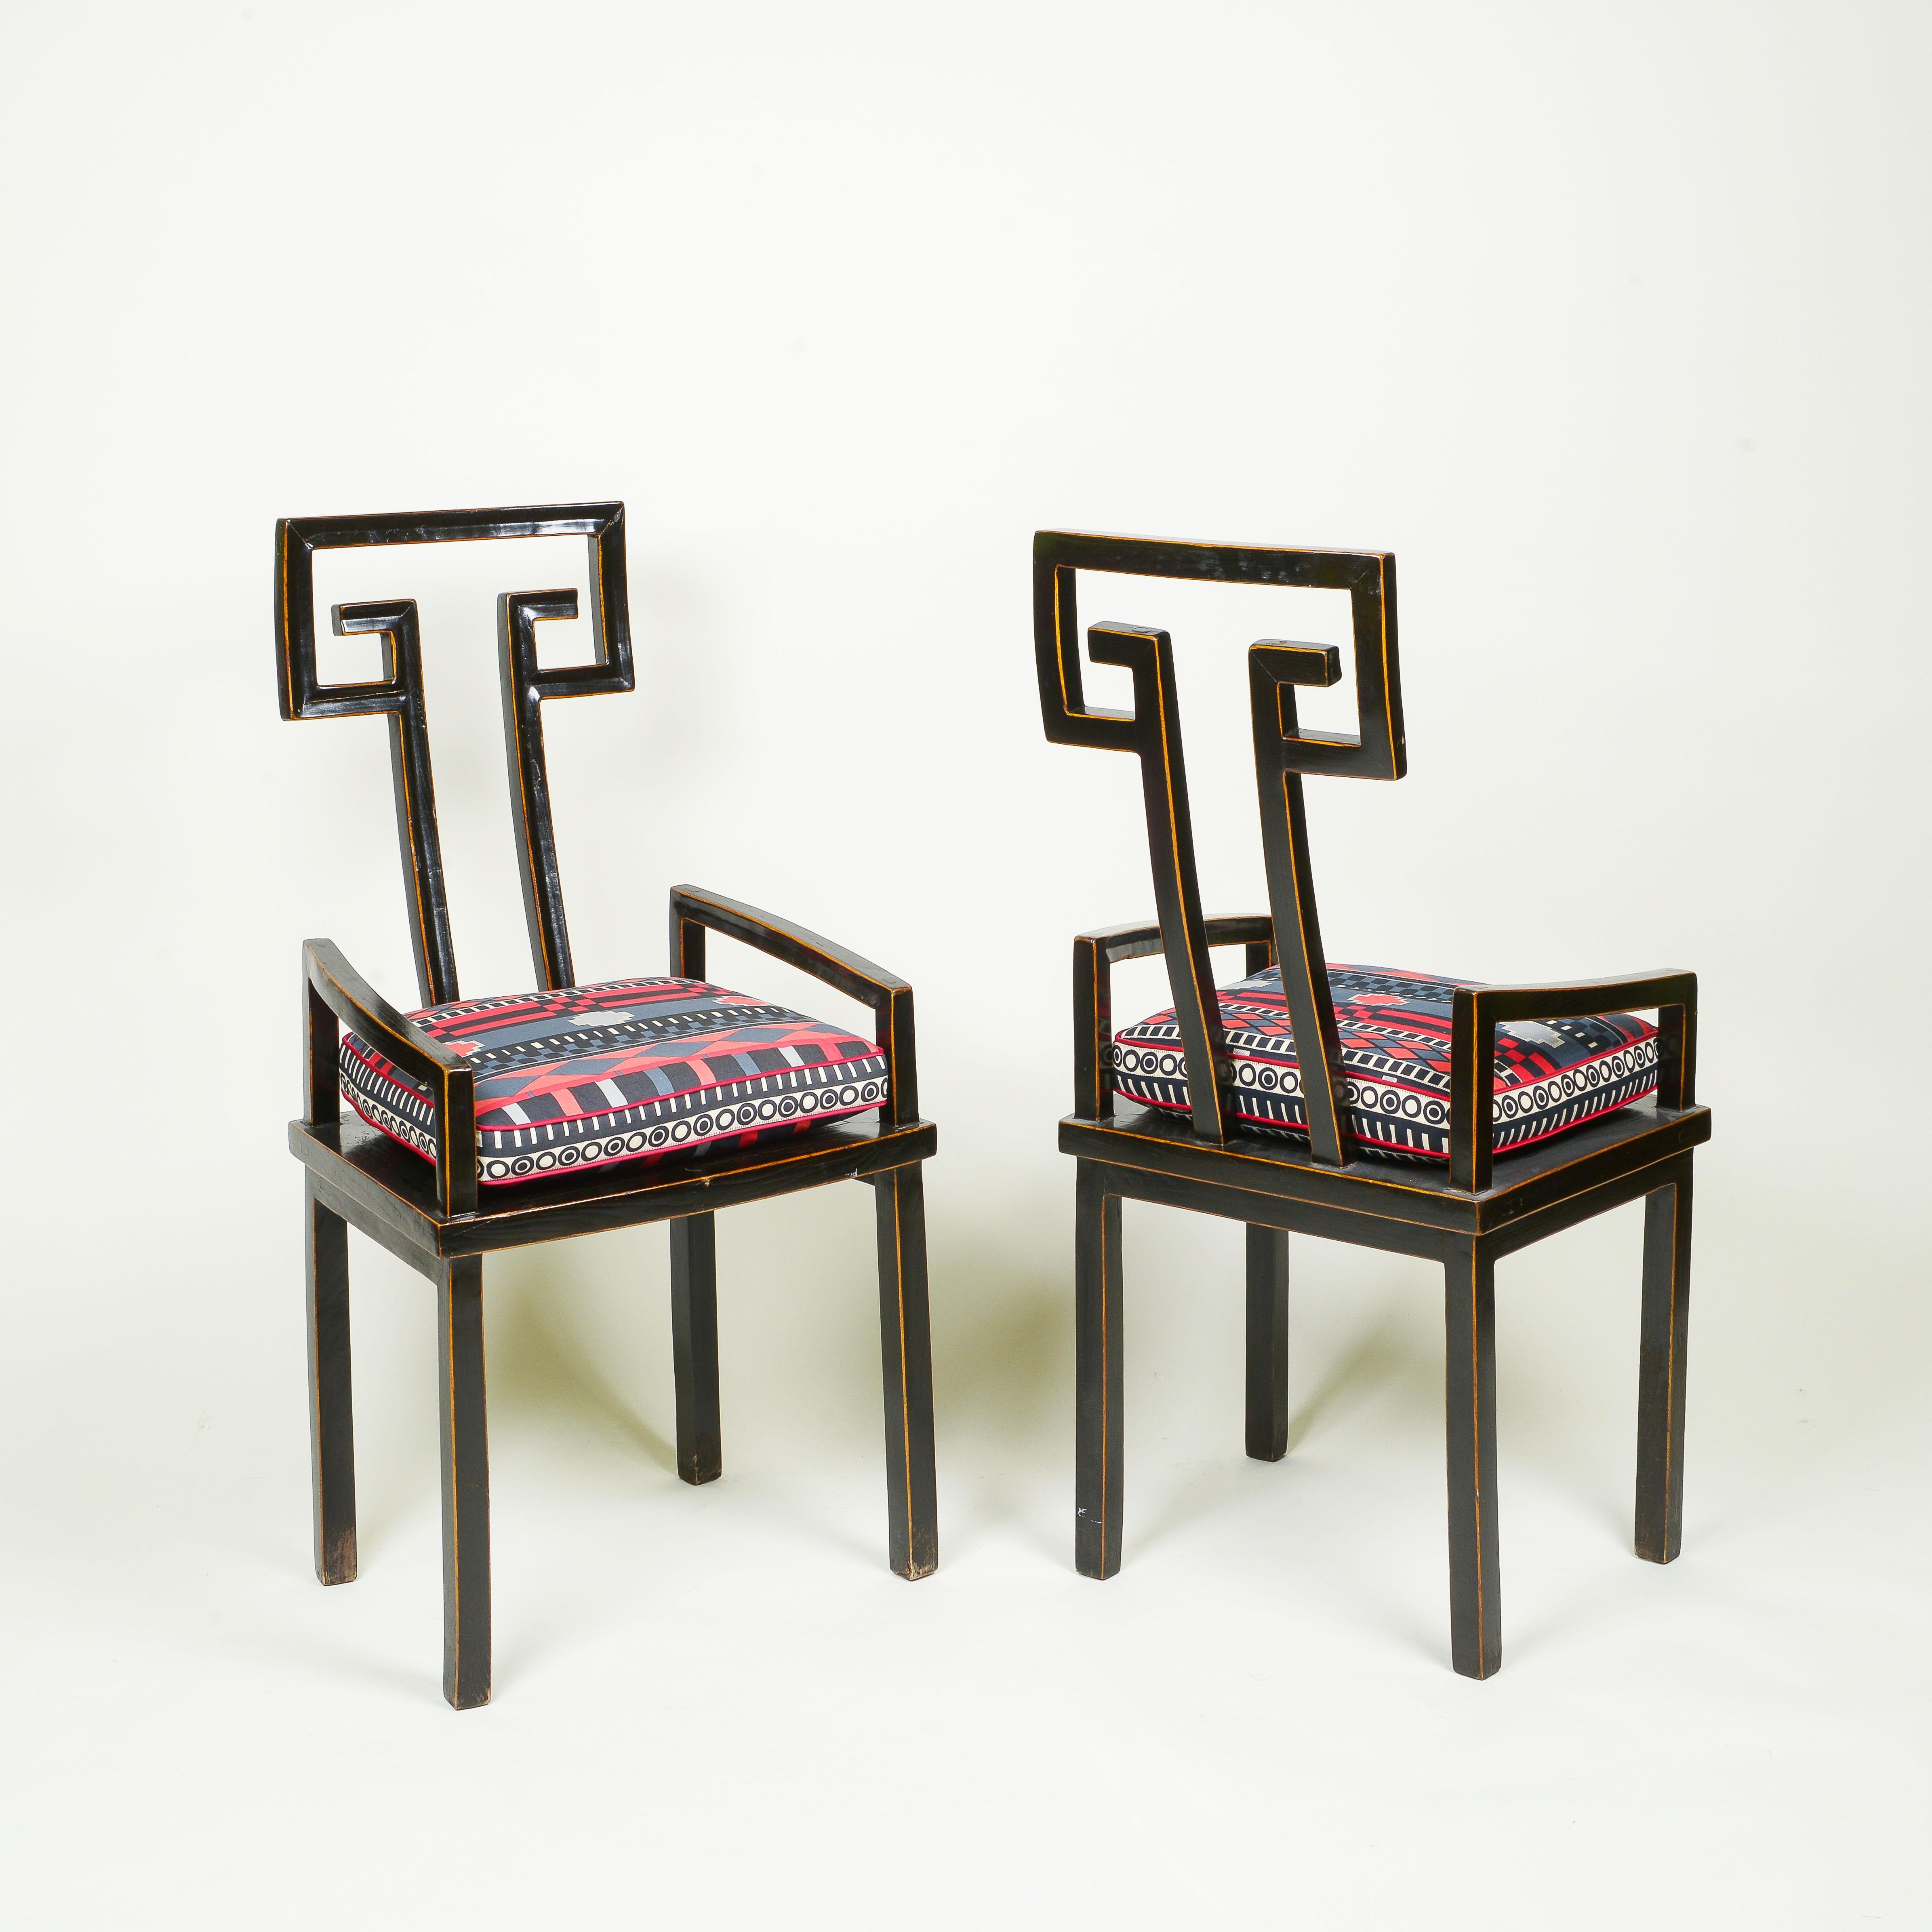 Mit offener Rückenplatte mit griechischem Schlüssel; auf geraden, quadratischen Beinen; das Sitzkissen ist aus Yves Saint Laurent-Stoff.